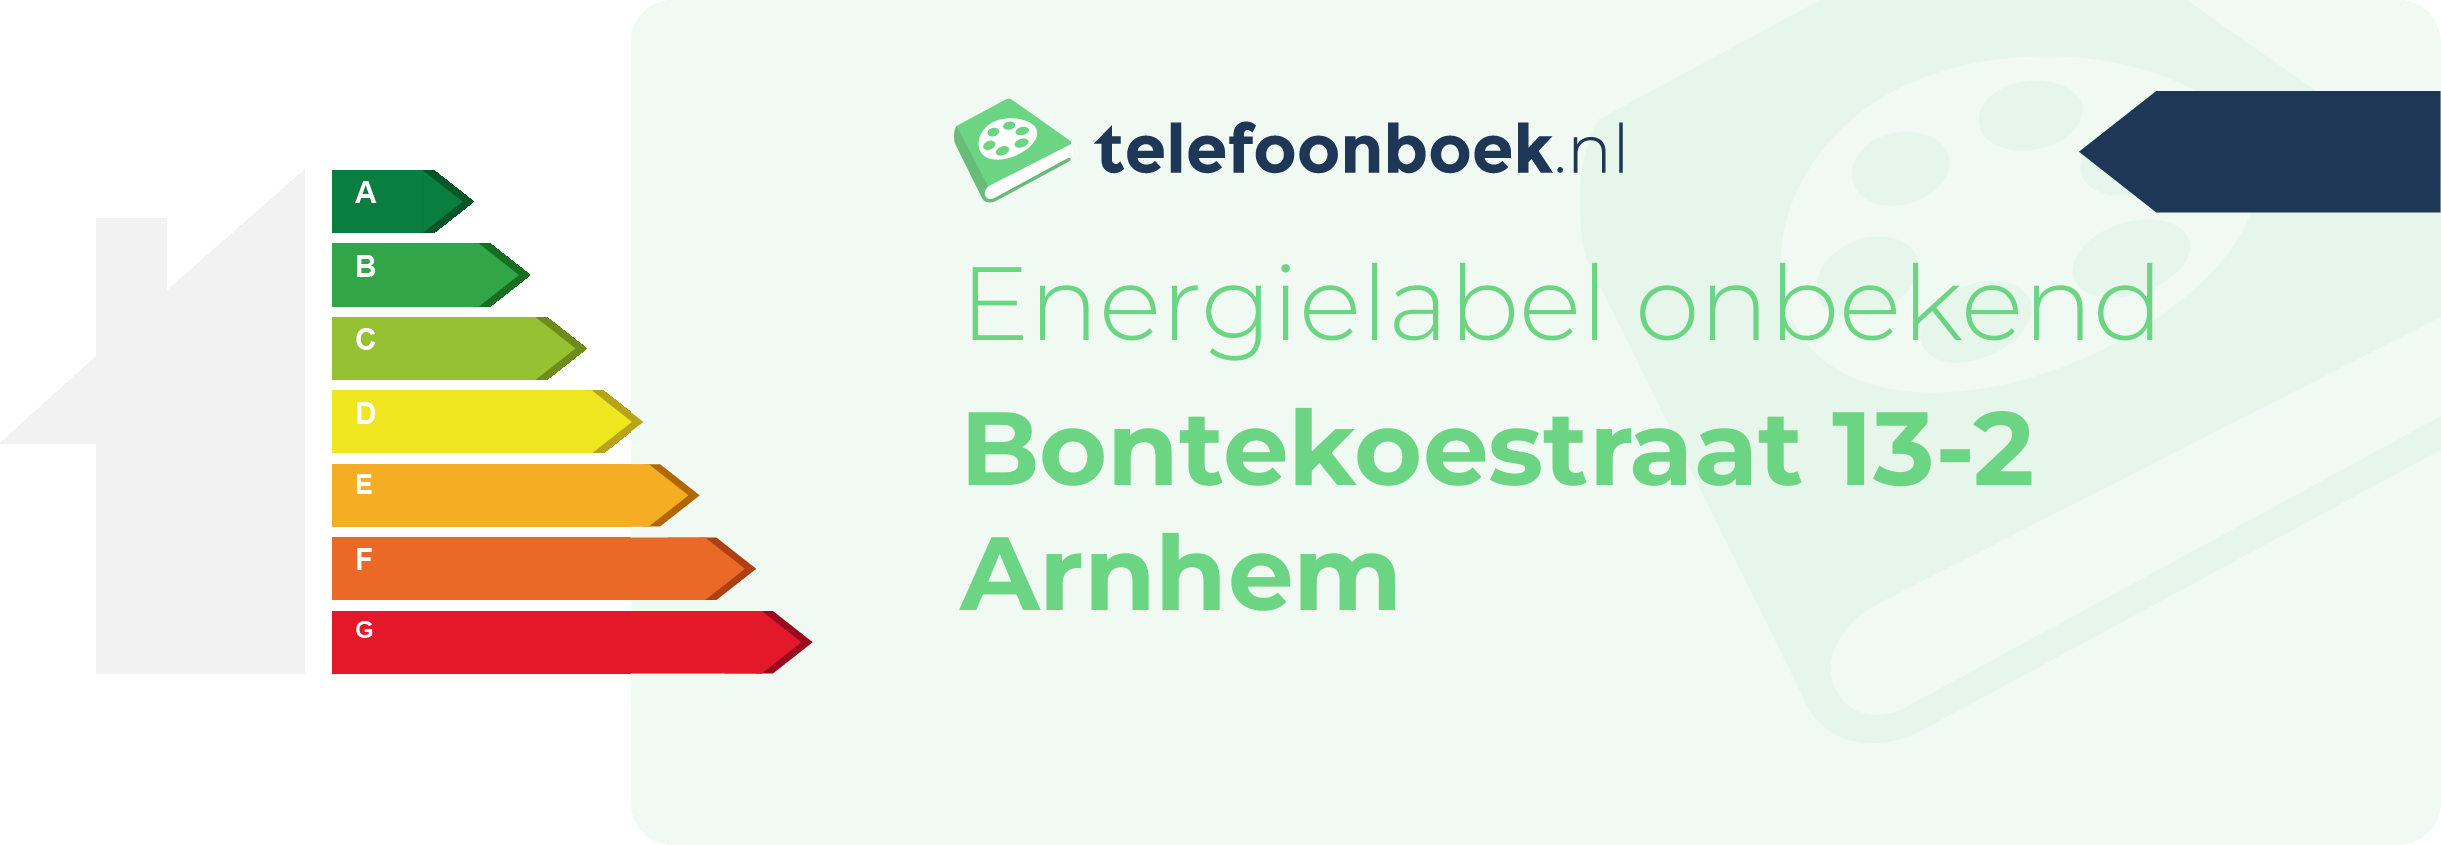 Energielabel Bontekoestraat 13-2 Arnhem